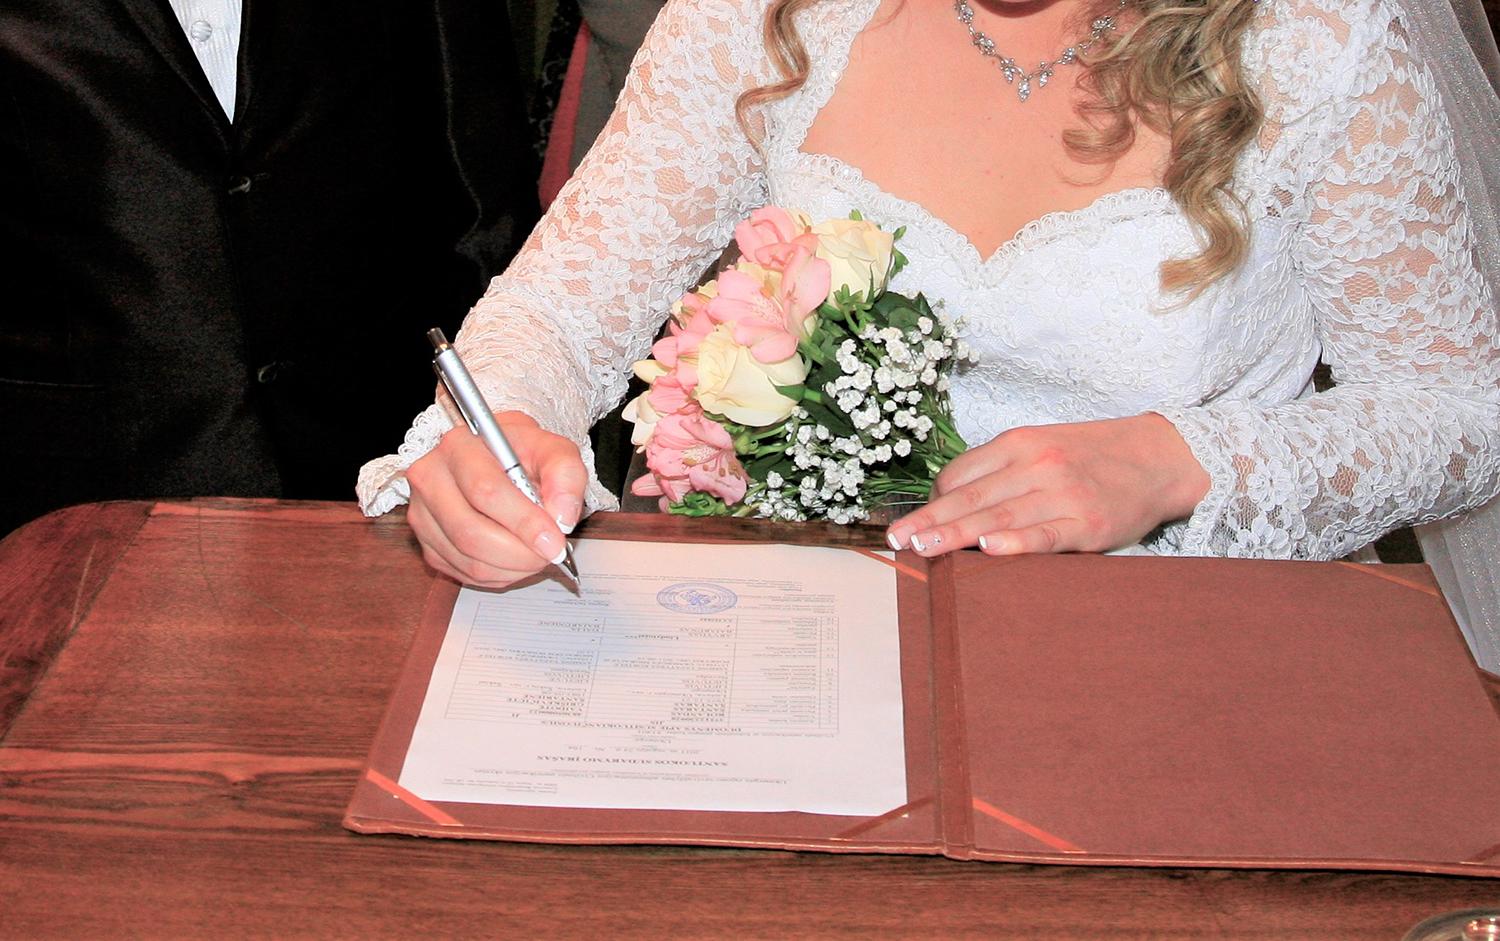 Ukmergiškiai į vedybų sutartis žiūri atsargiai / Lietuvoje kasmet sudaroma vis daugiau vedybų sutarčių.